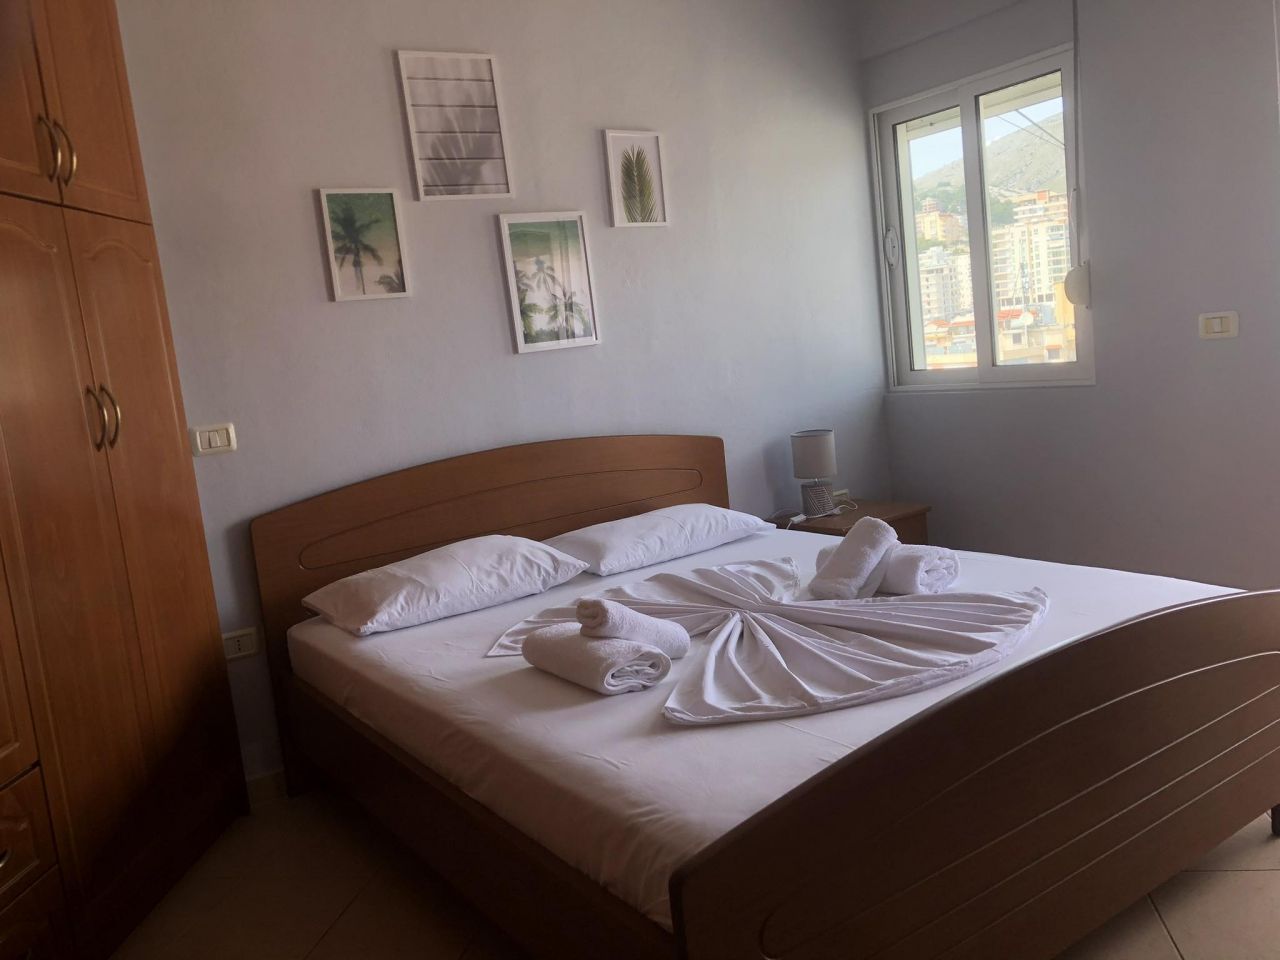 Wynajem mieszkania wakacyjnego w Albanii Saranda